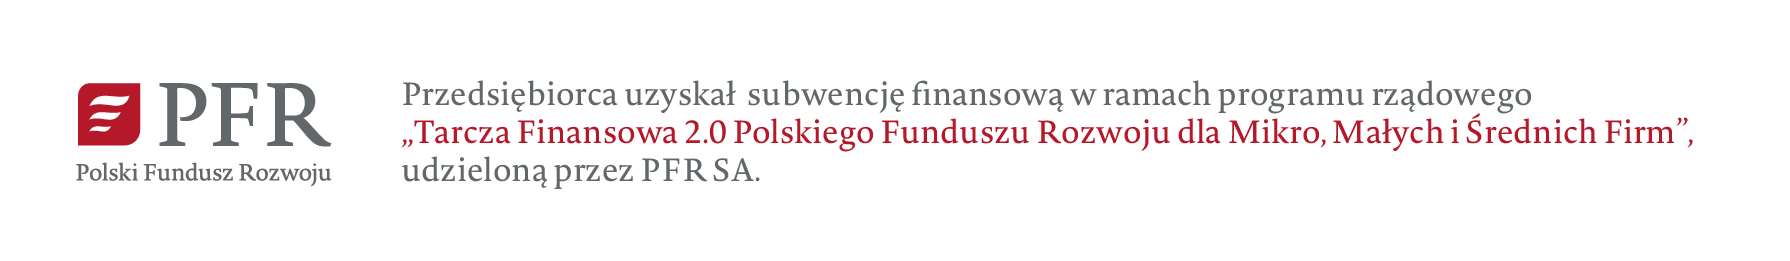 Polski Fundusz Rozwoju S.A.